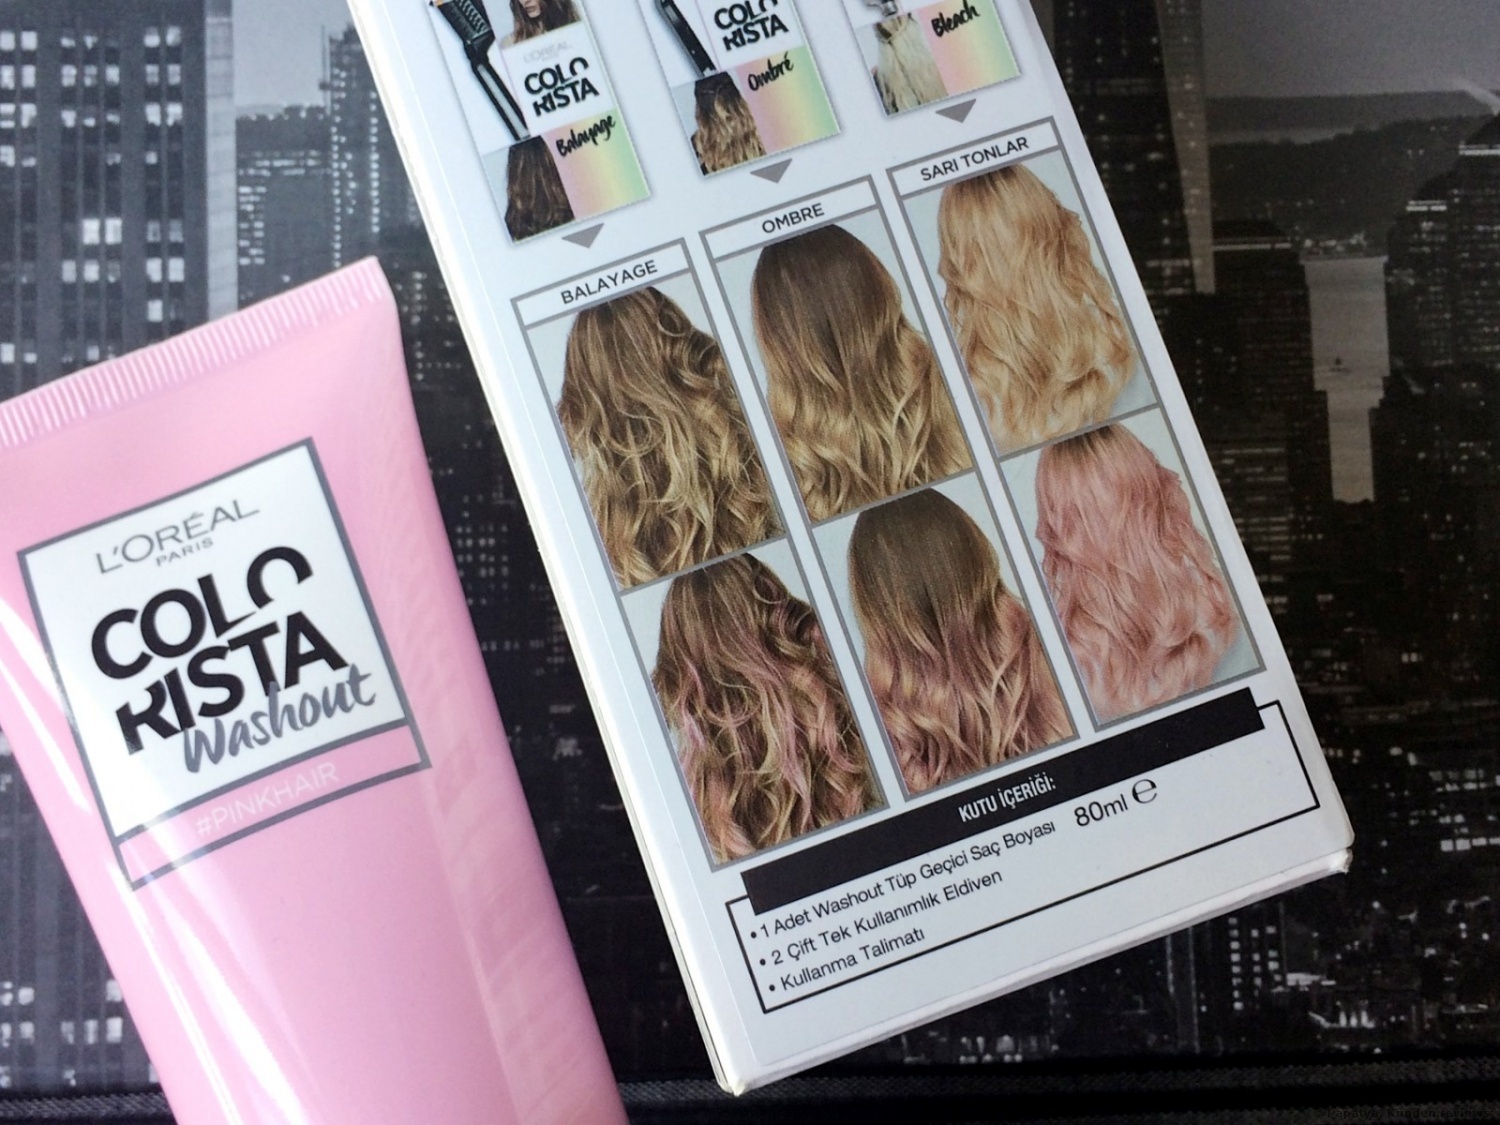  L’Oréal Colovista Wash out Pinkhair